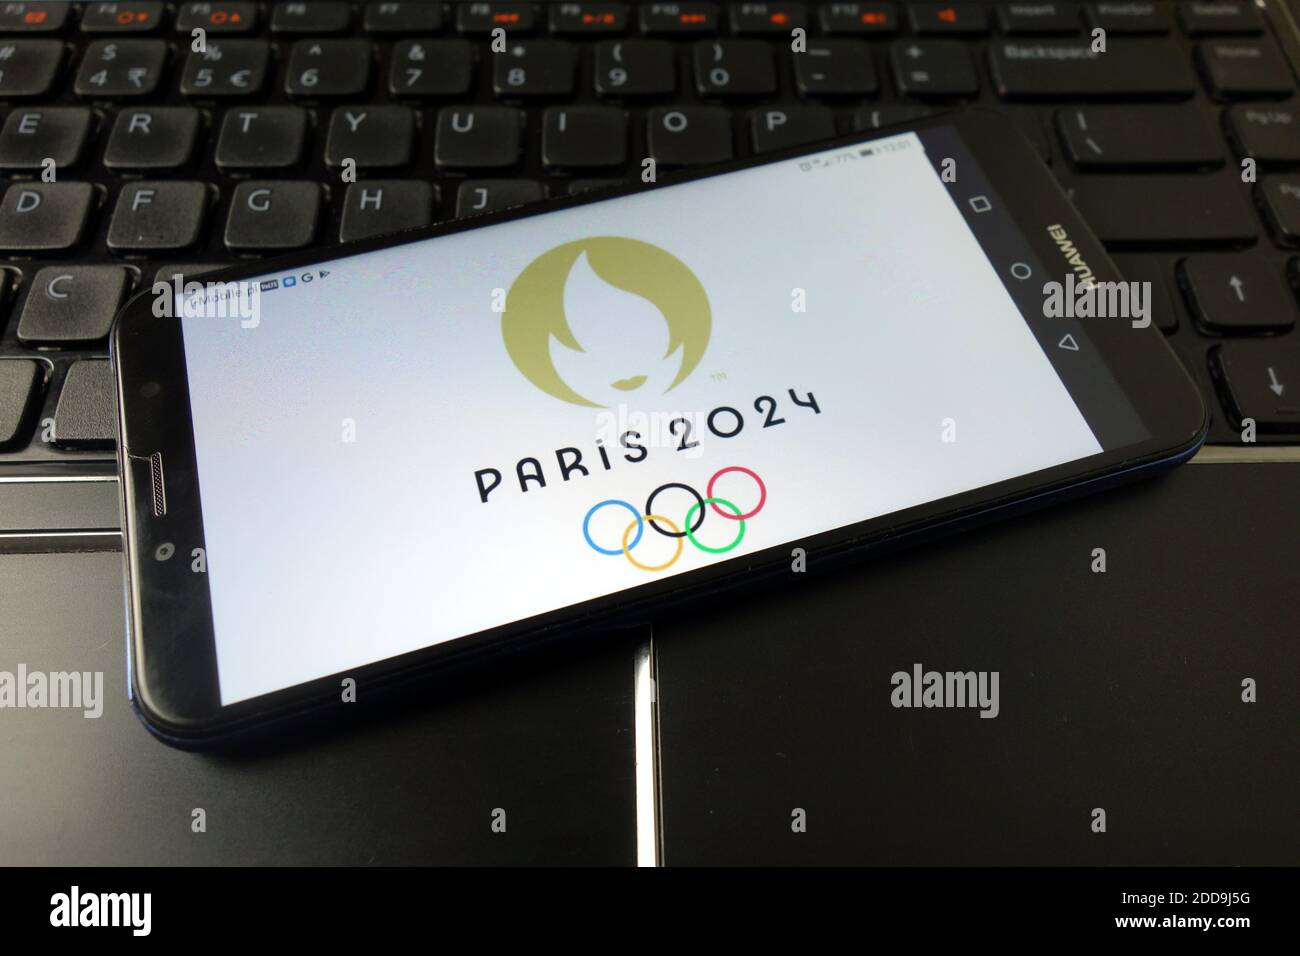 KONSKIE, POLONIA - 21 dicembre 2019: Logo delle Olimpiadi estive 2024 visualizzato sul telefono cellulare Foto Stock